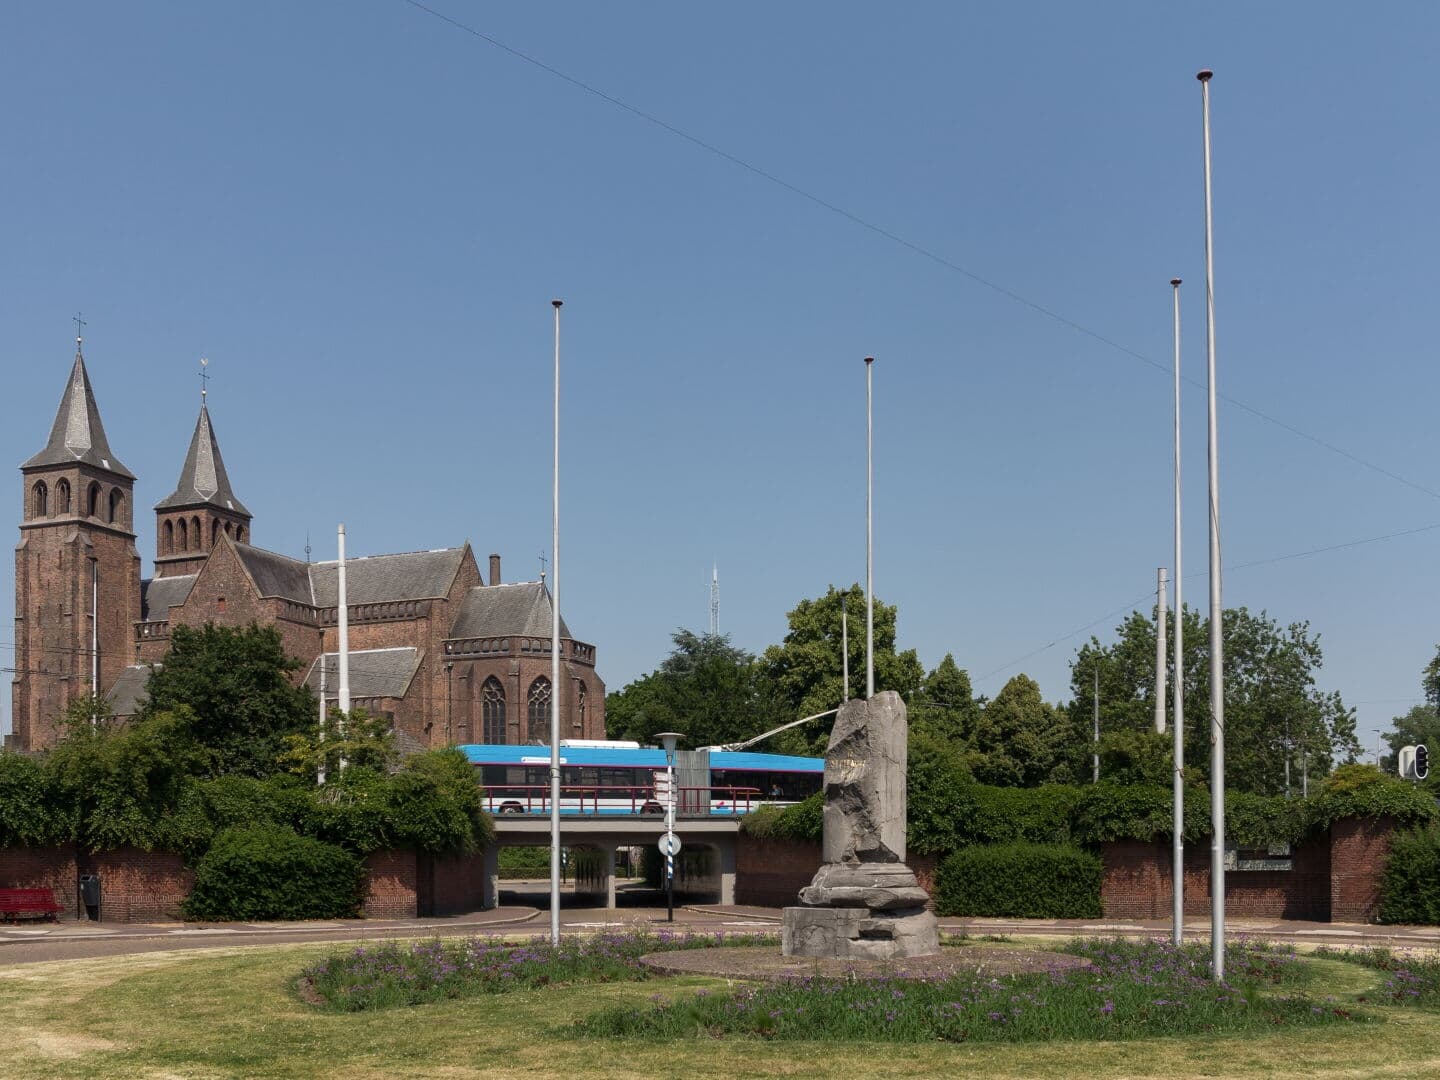 Arnhem photo